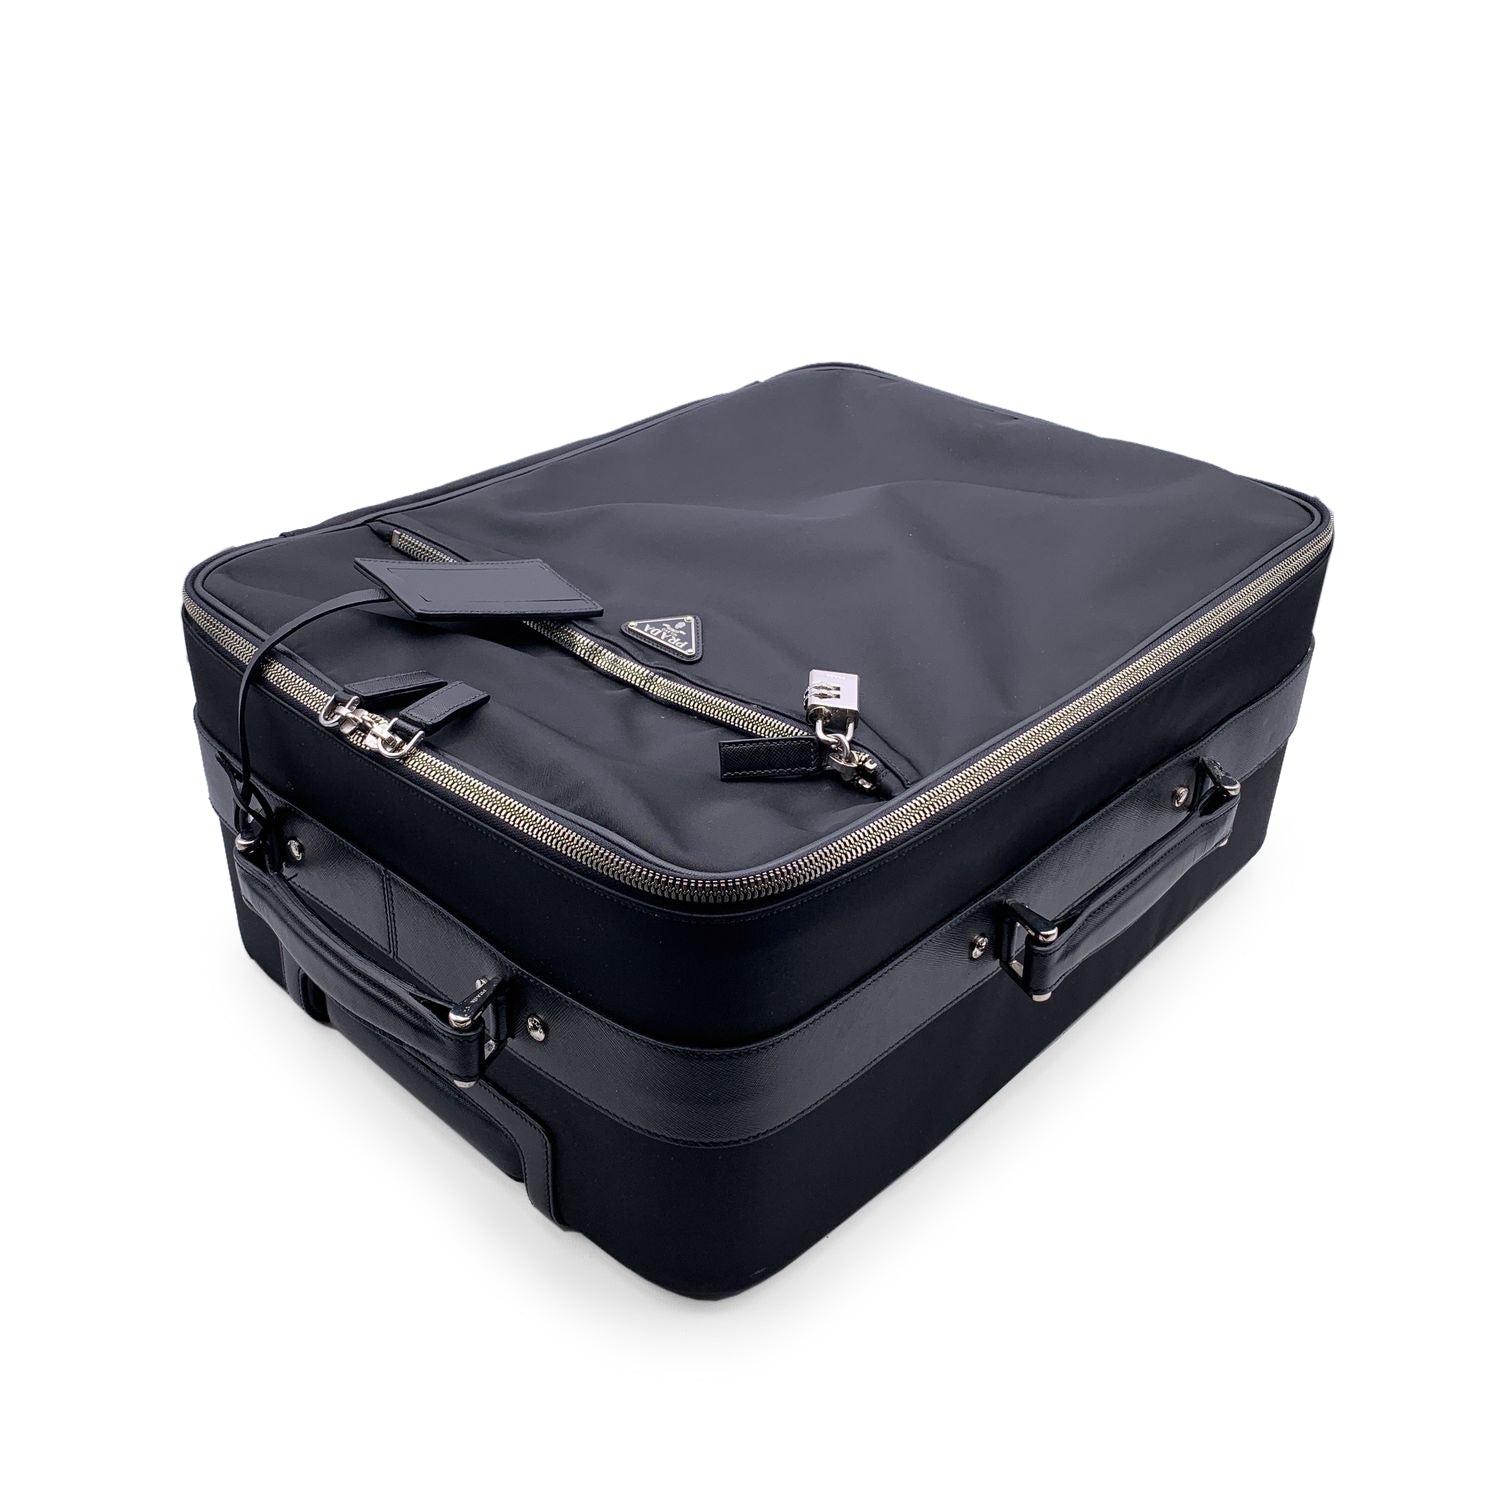  Prada Black Nylon Rolling Suitcase Trolley Luggage Travel Bag Unisexe 